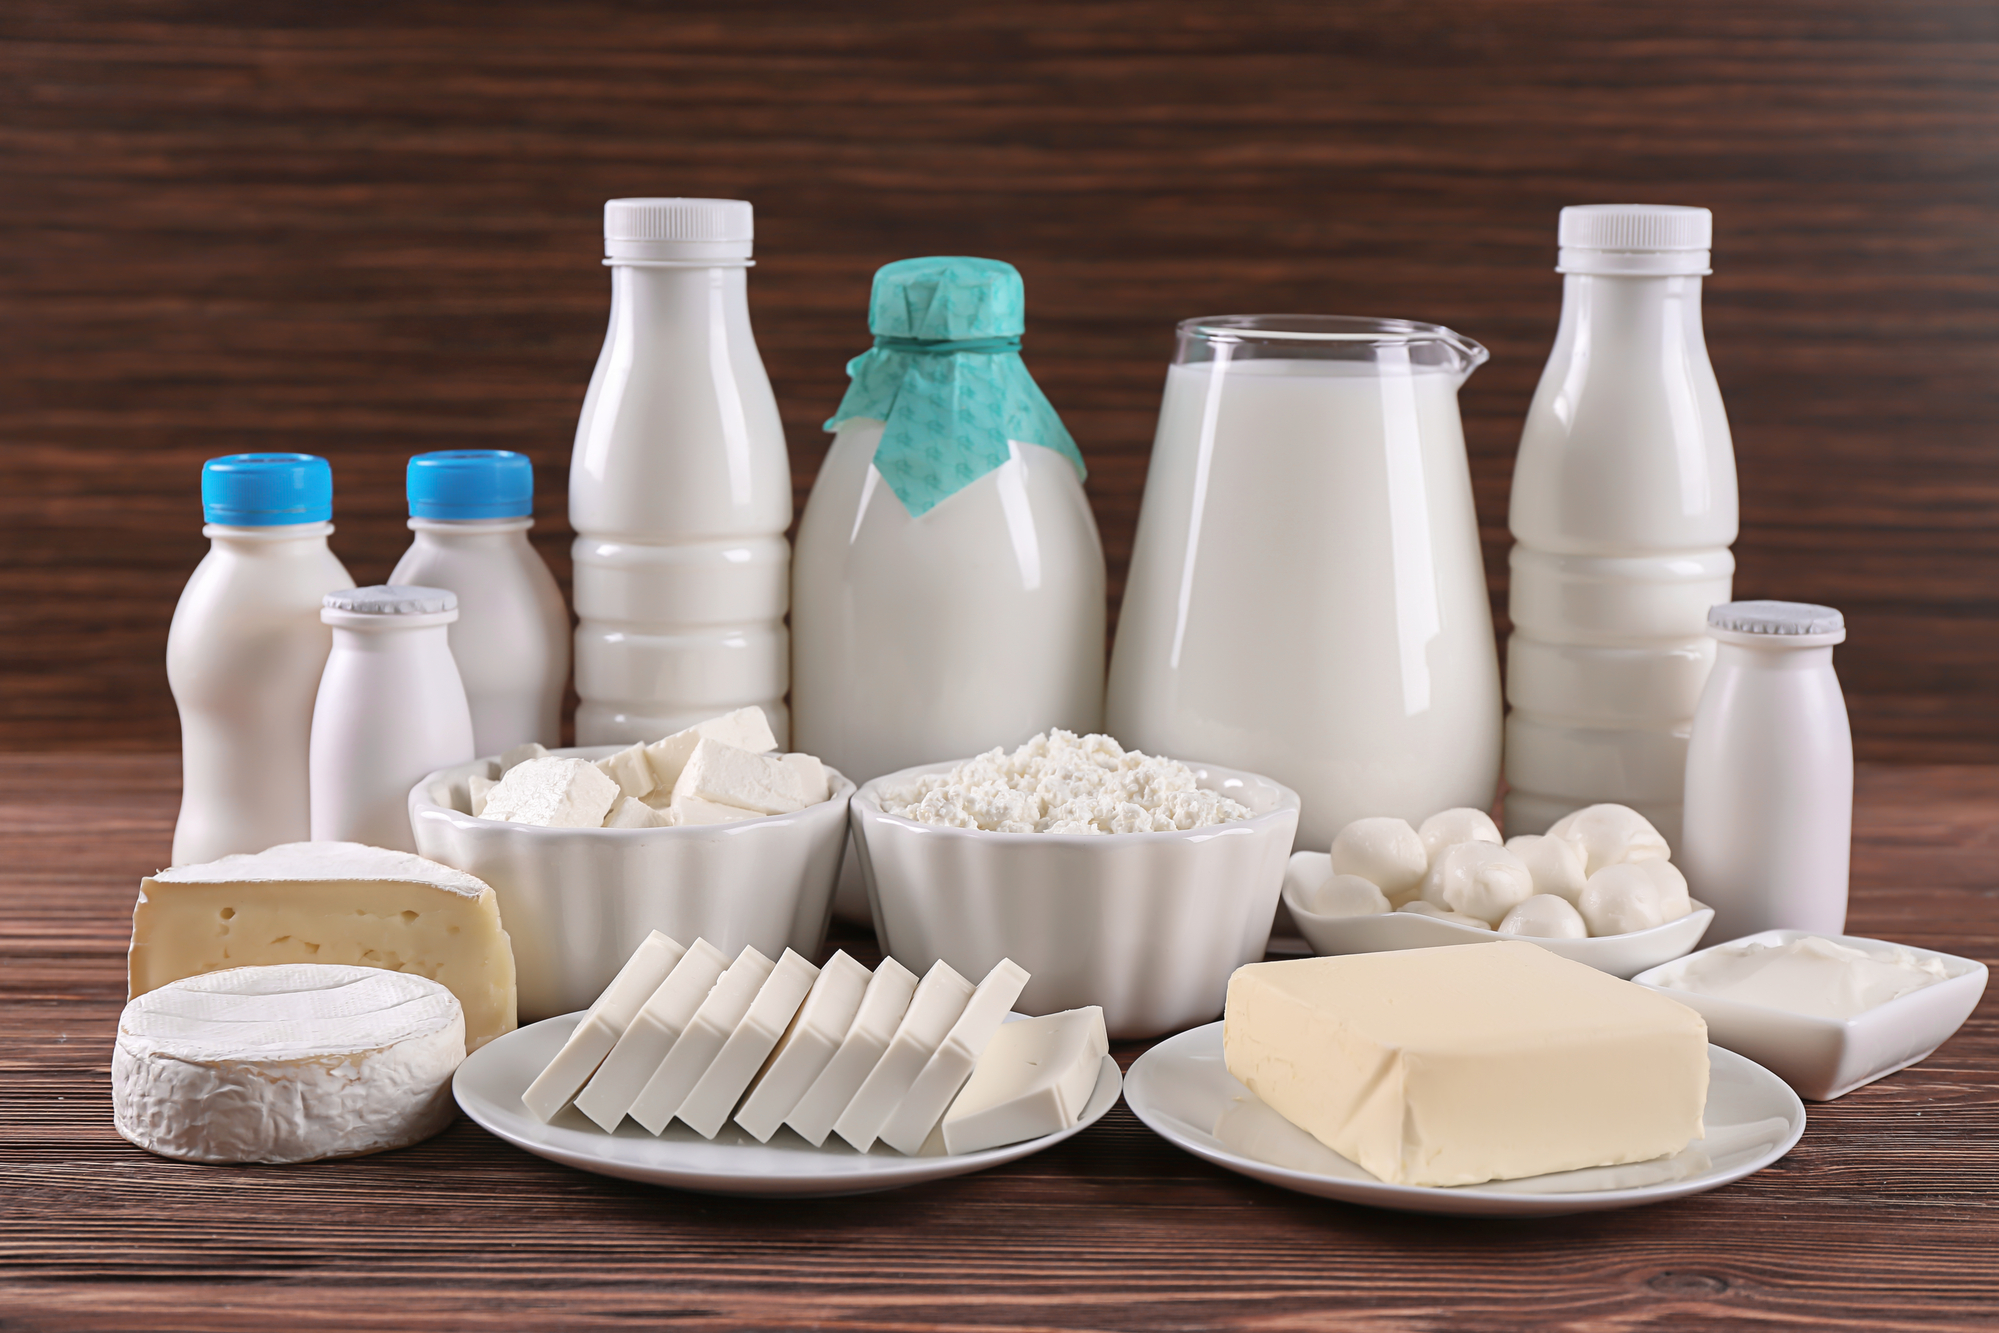 Importaciones de productos lácteos alcanzan máximos históricos en 2021 y suman en torno a US$ 500 millones